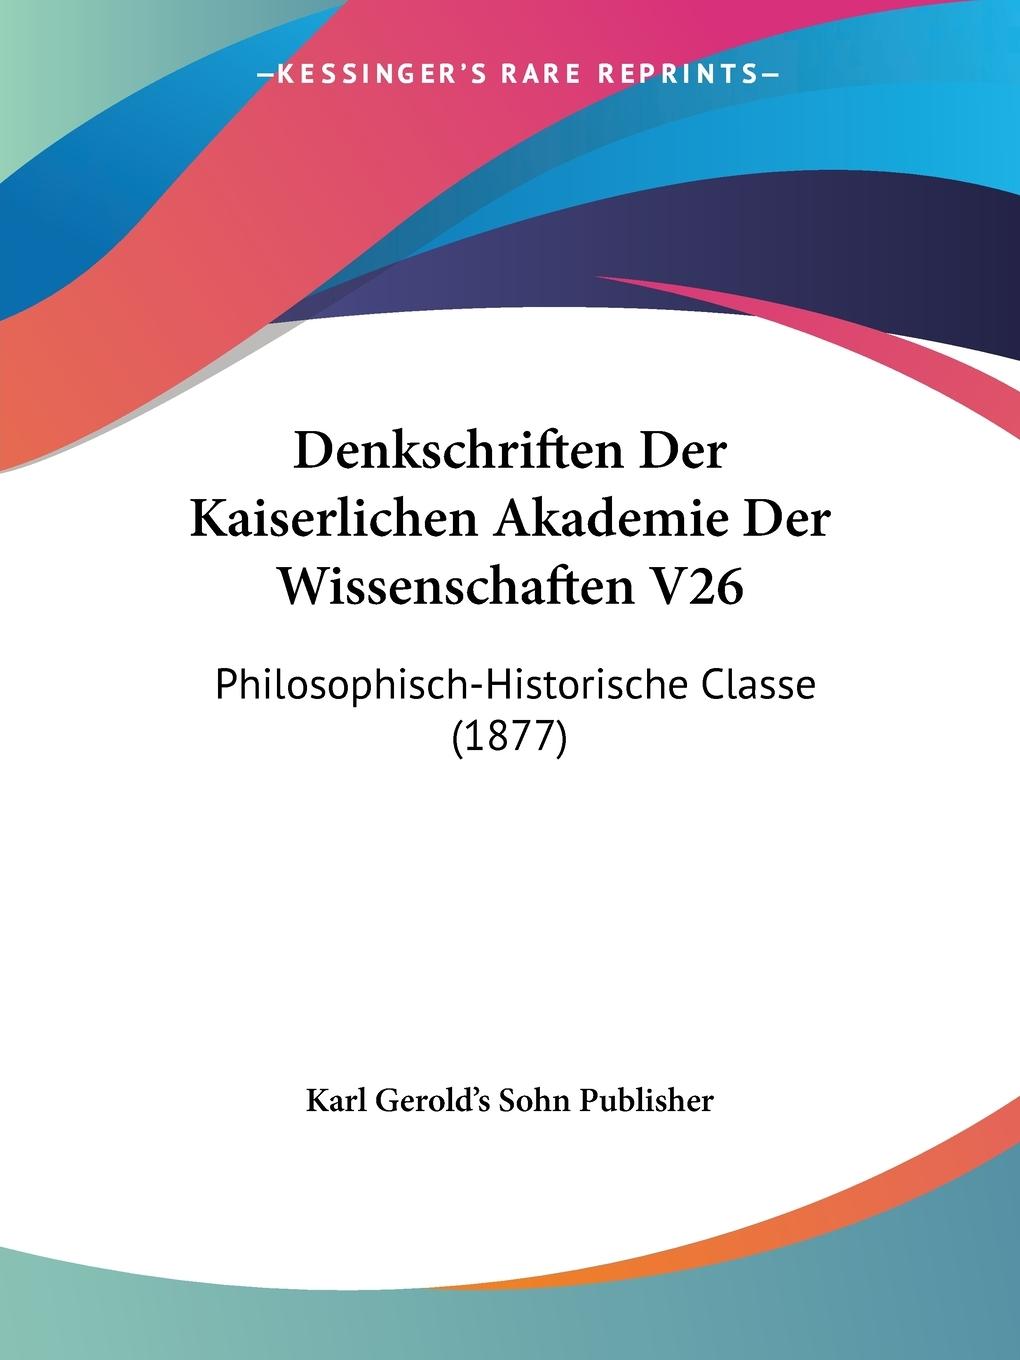 Denkschriften Der Kaiserlichen Akademie Der Wissenschaften V26 - Karl Gerold s Sohn Publisher